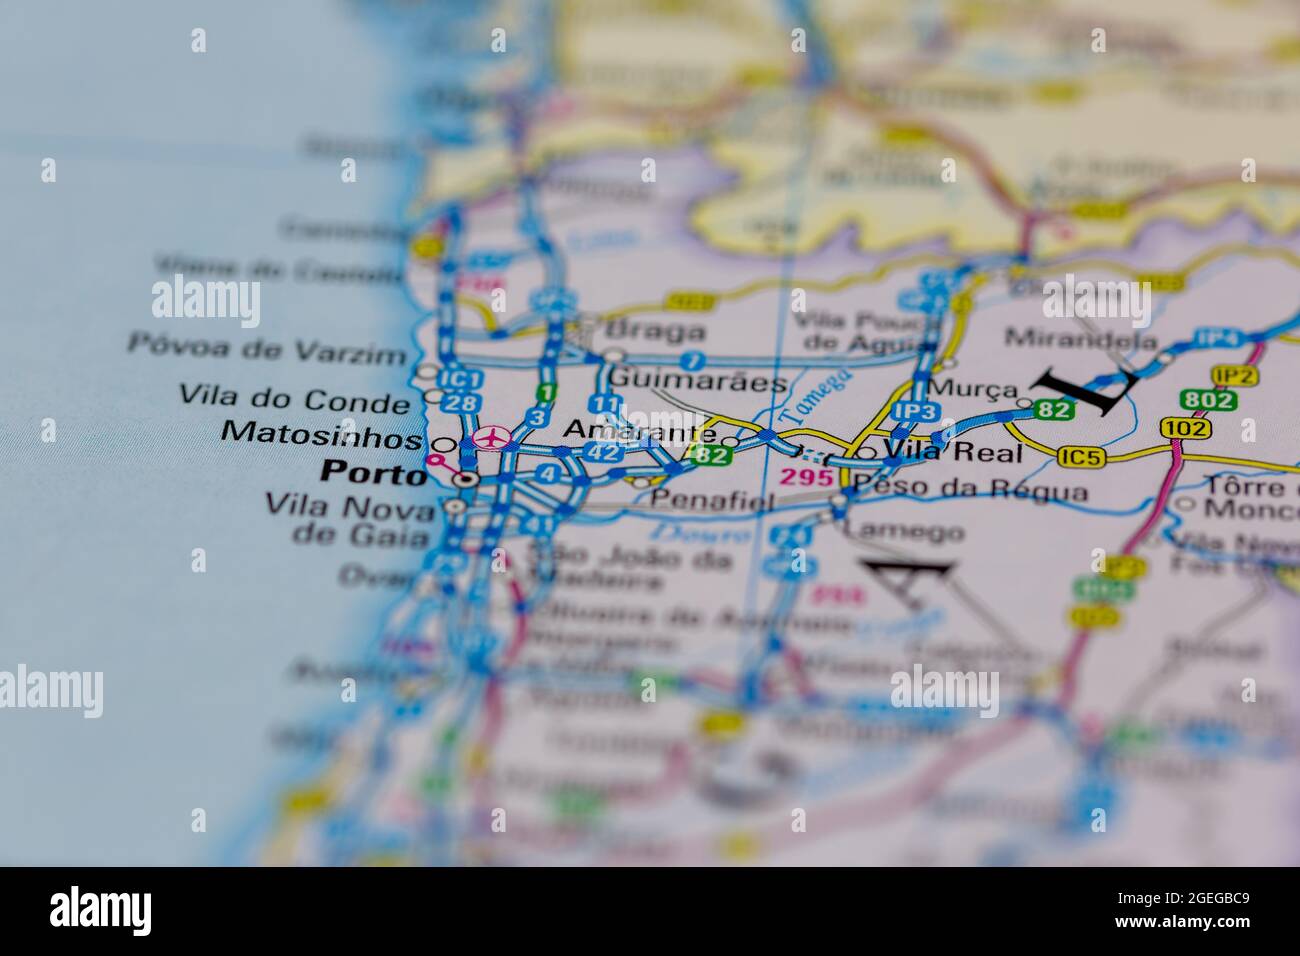 Amarante Portugal aparece en un mapa de carreteras o mapa geográfico Foto de stock